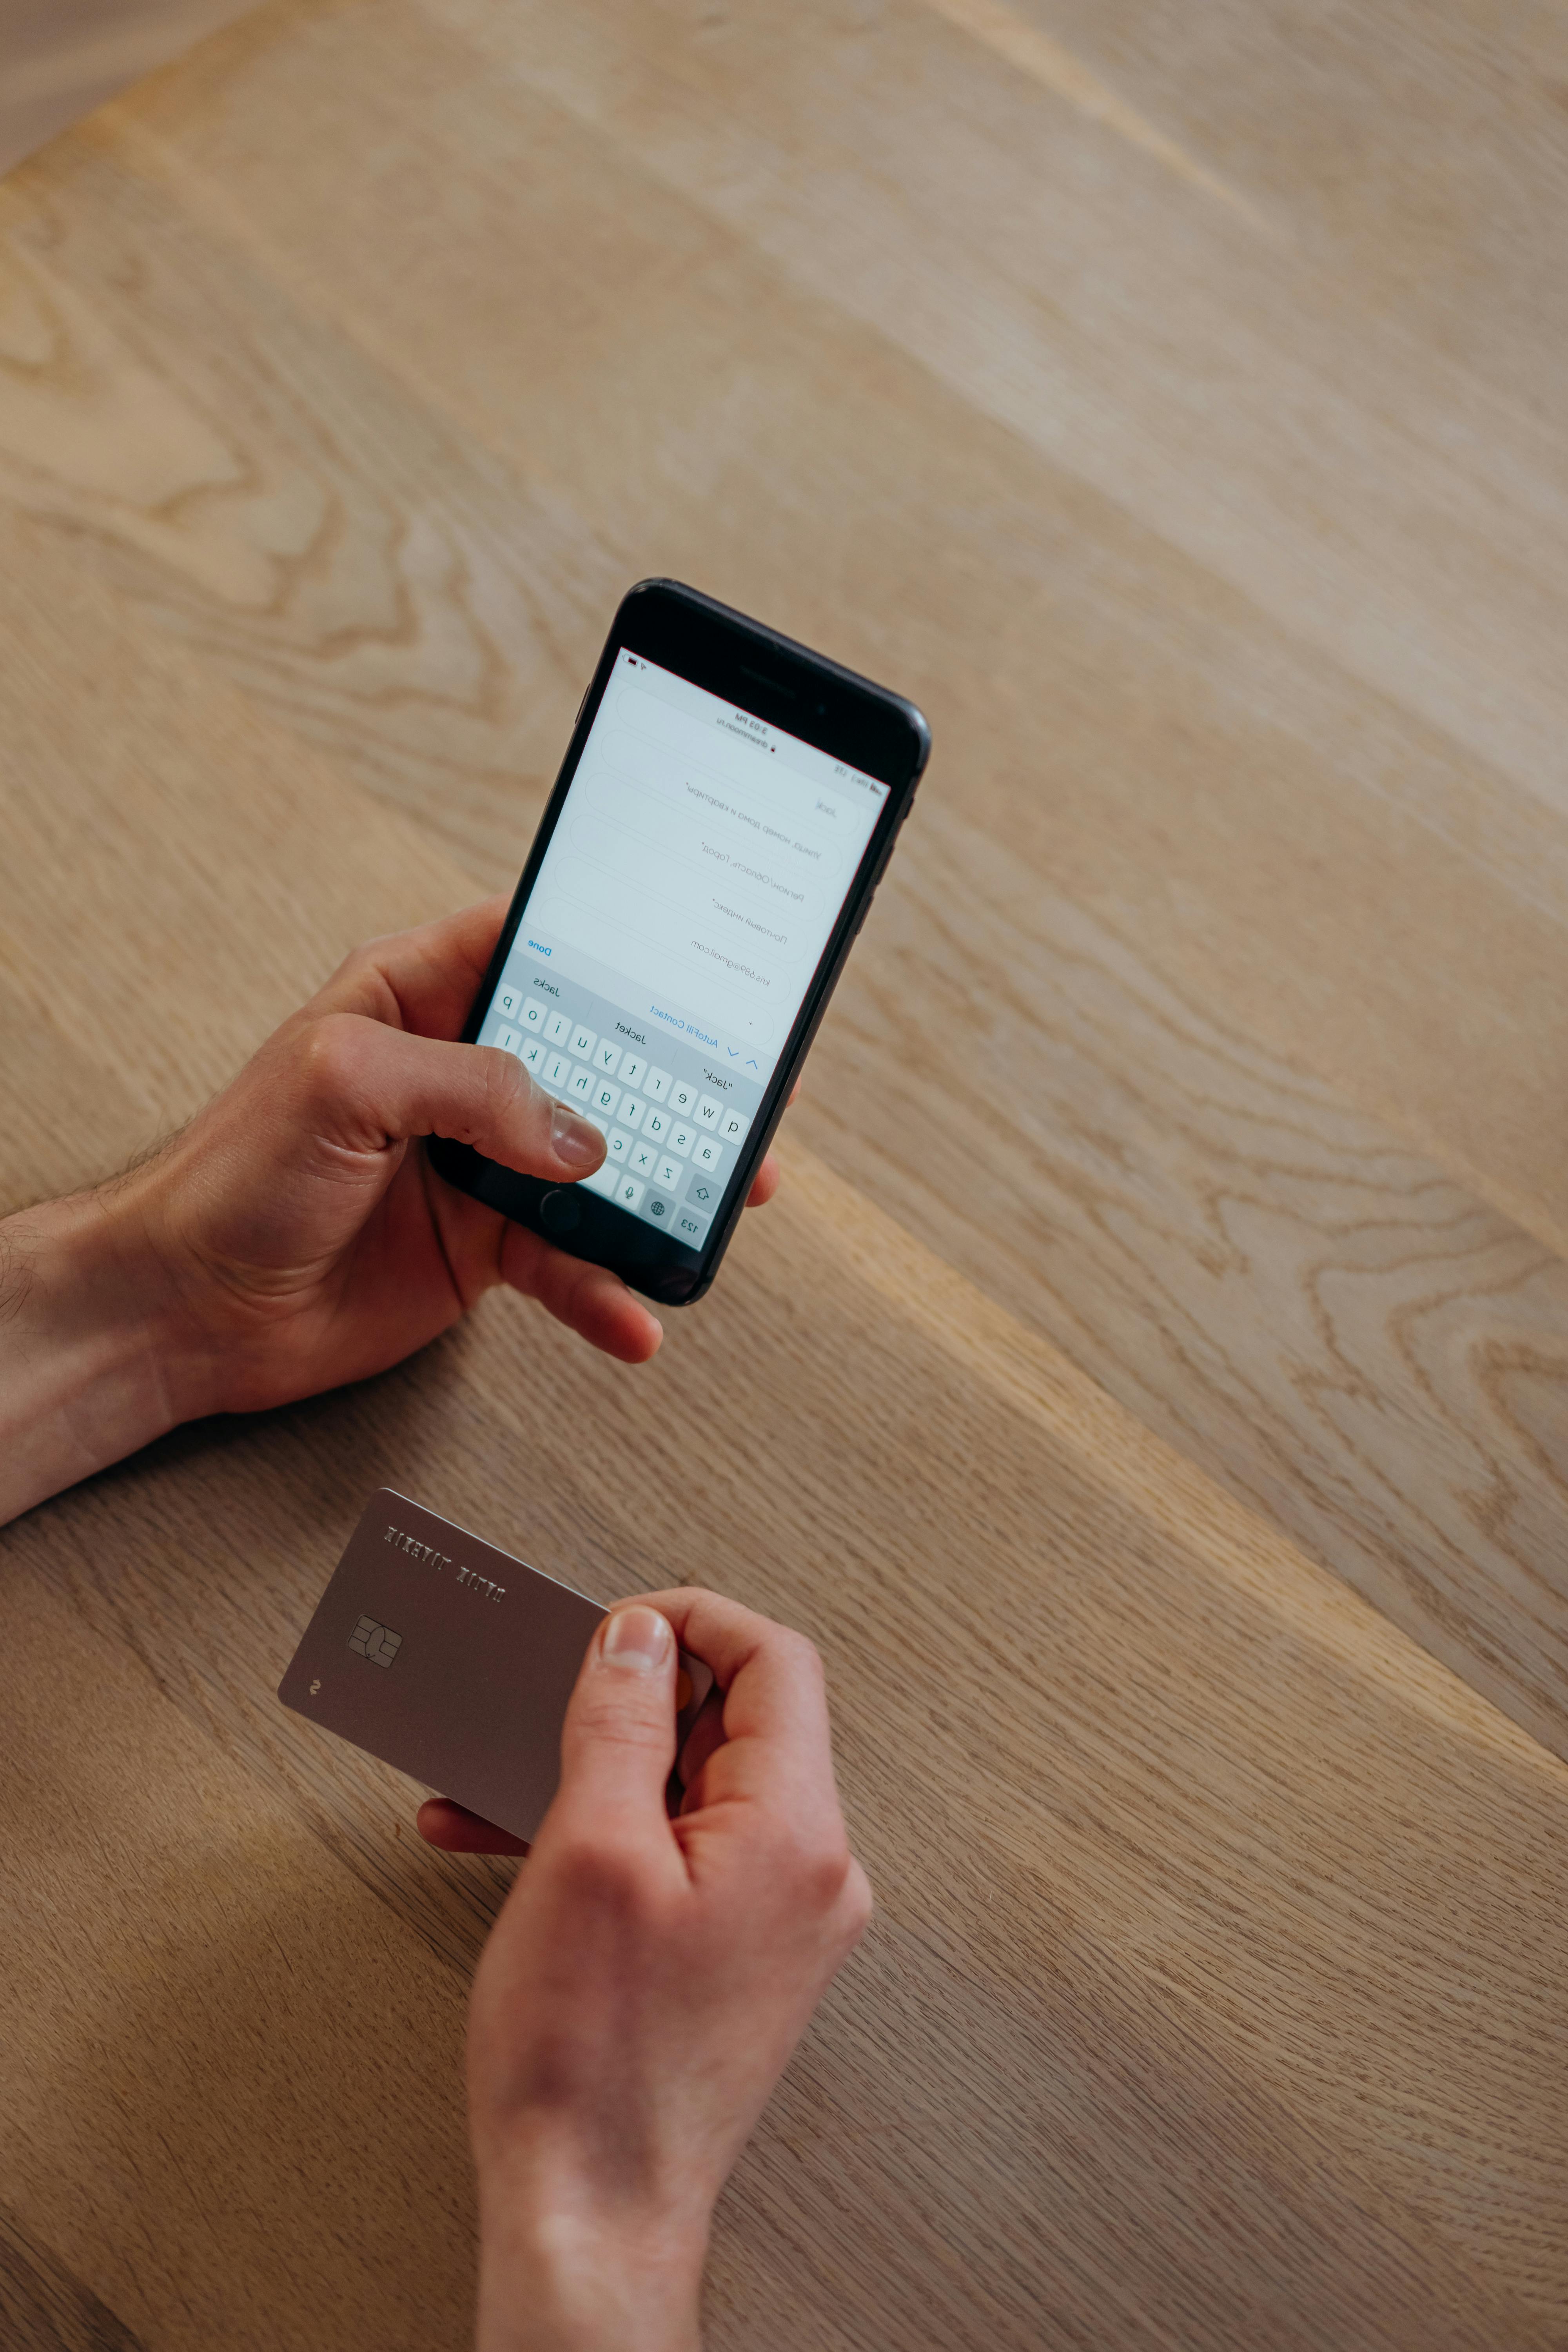 Eine Person, die eine SMS schreibt, während sie eine Kreditkarte hält | Quelle: Pexels